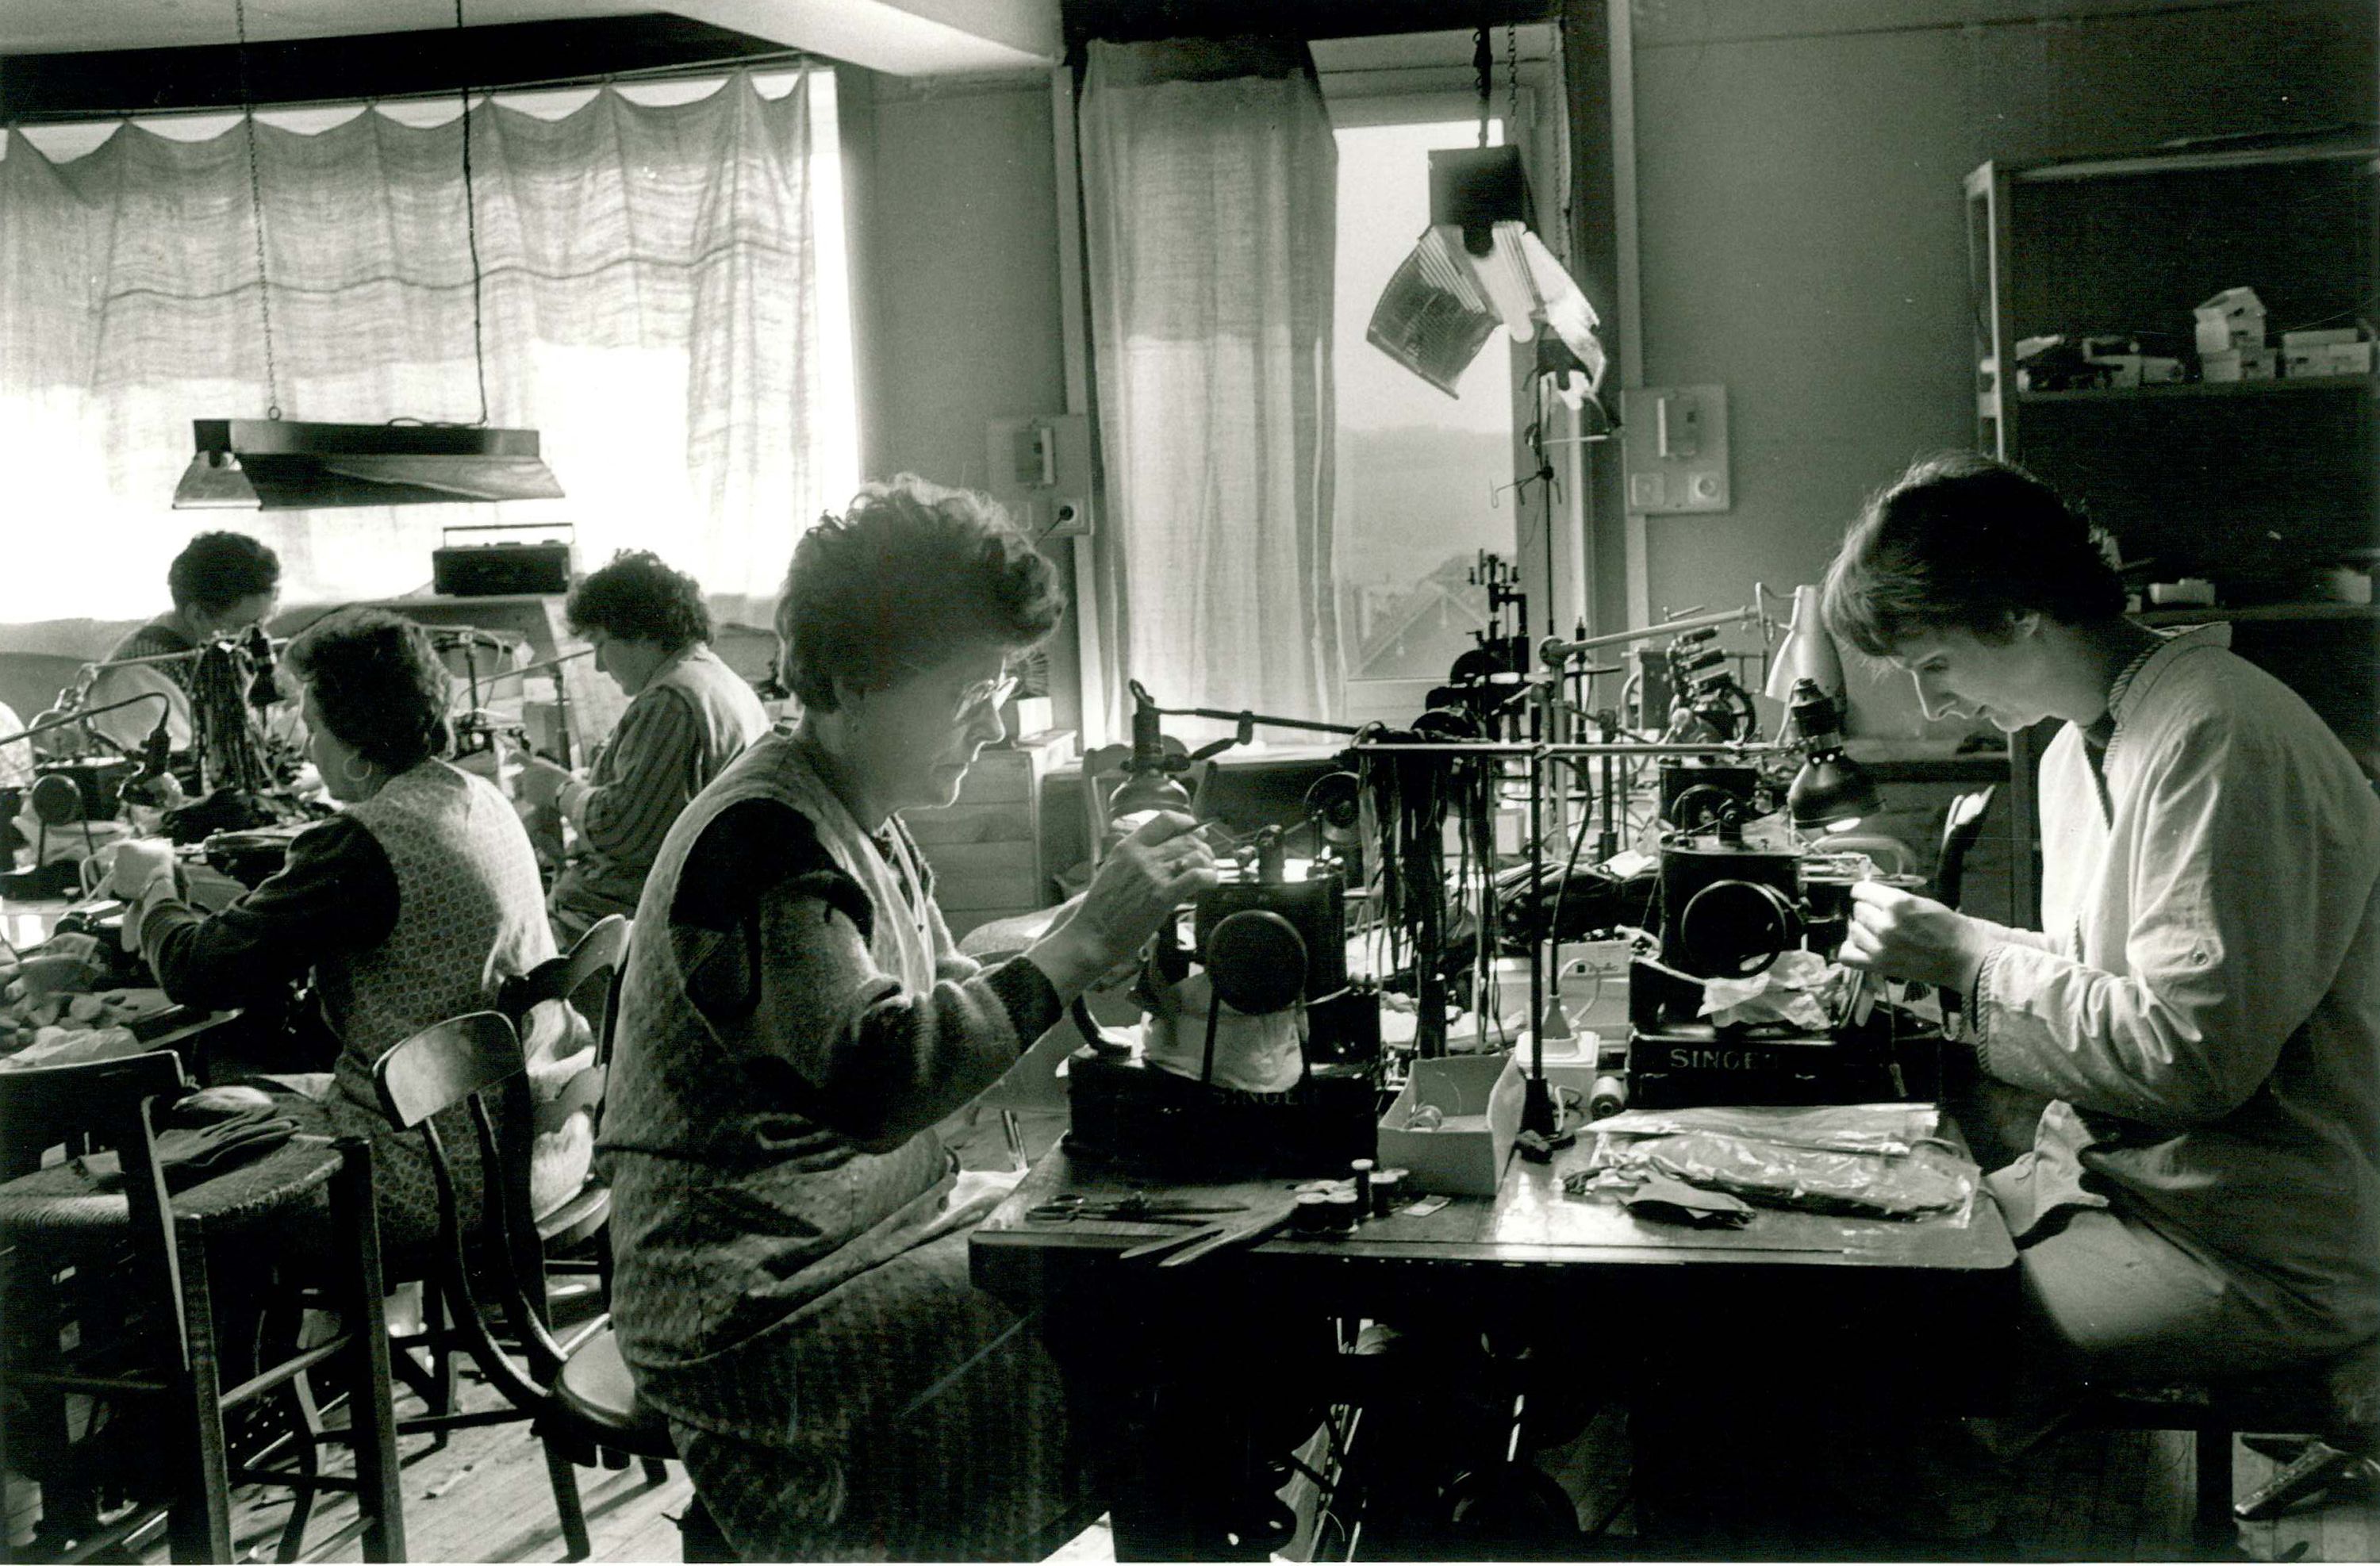 Couturières de gants à la ganterie coopérative, 1993